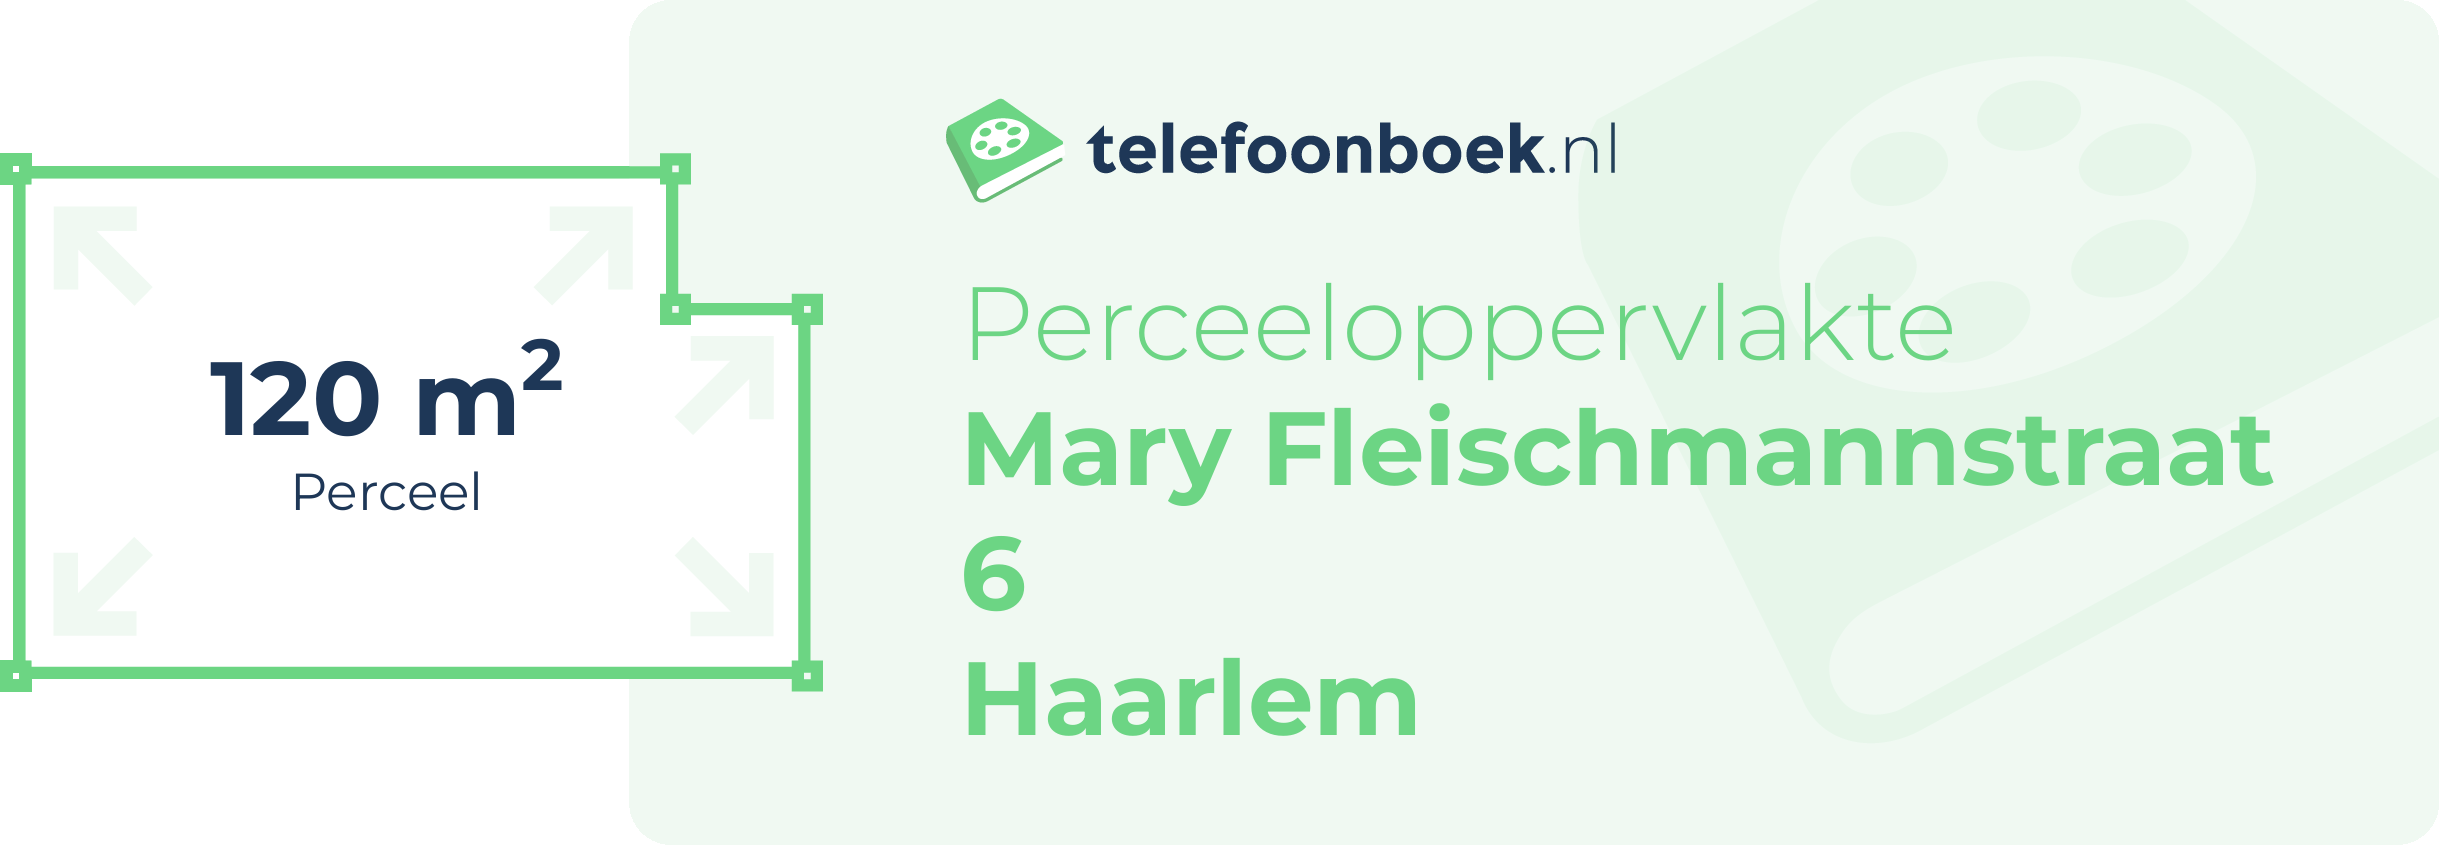 Perceeloppervlakte Mary Fleischmannstraat 6 Haarlem